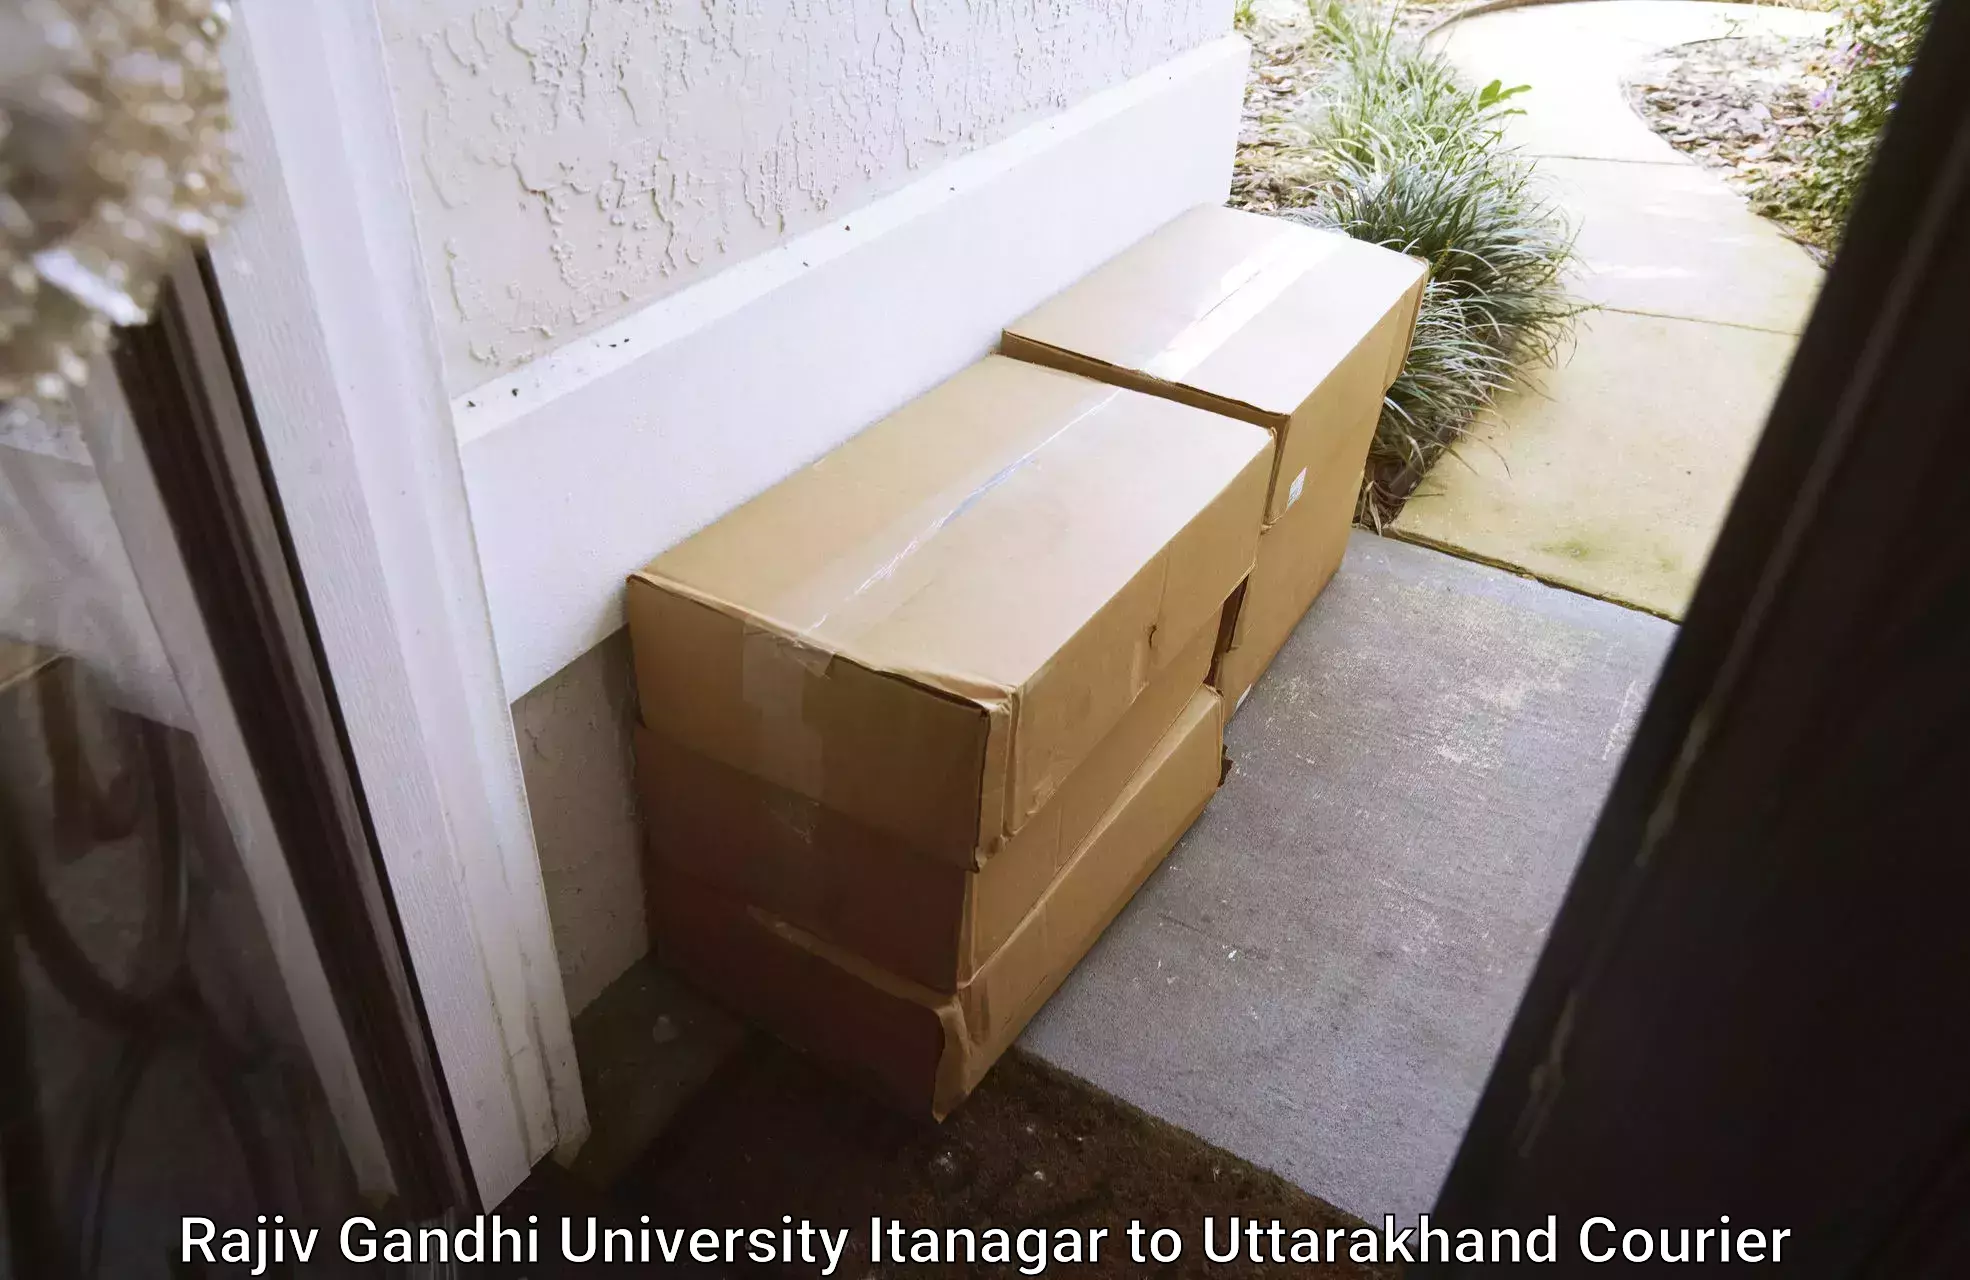 Express courier capabilities Rajiv Gandhi University Itanagar to Tehri Garhwal